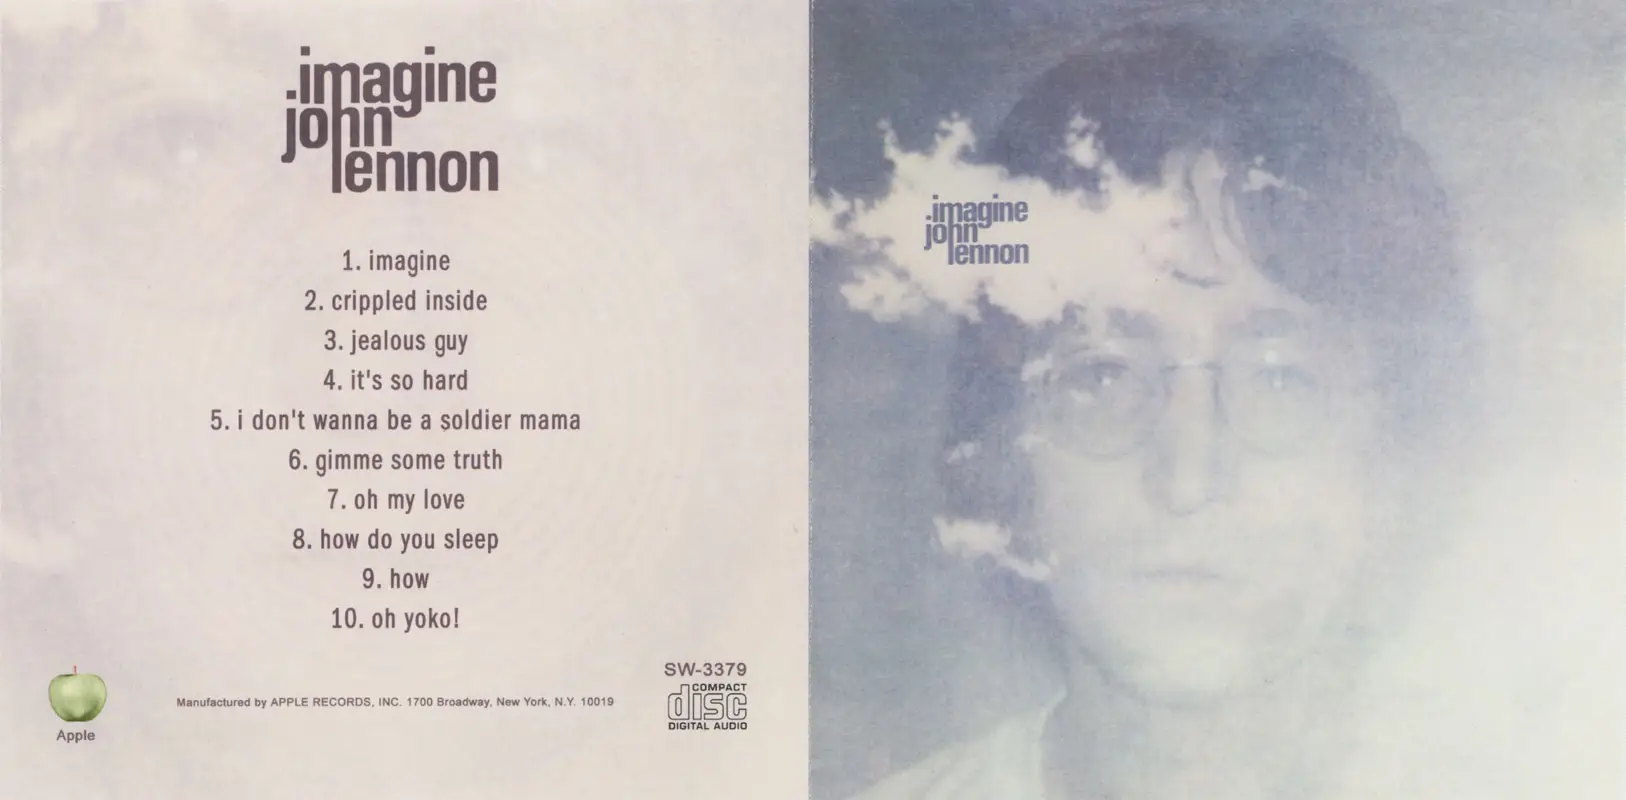 Imagine песня джона. Джон Леннон 1971. Джон Леннон 1971 imagine. John Lennon imagine обложка. John Lennon - imagine (1971)(Balkanton, 1989).